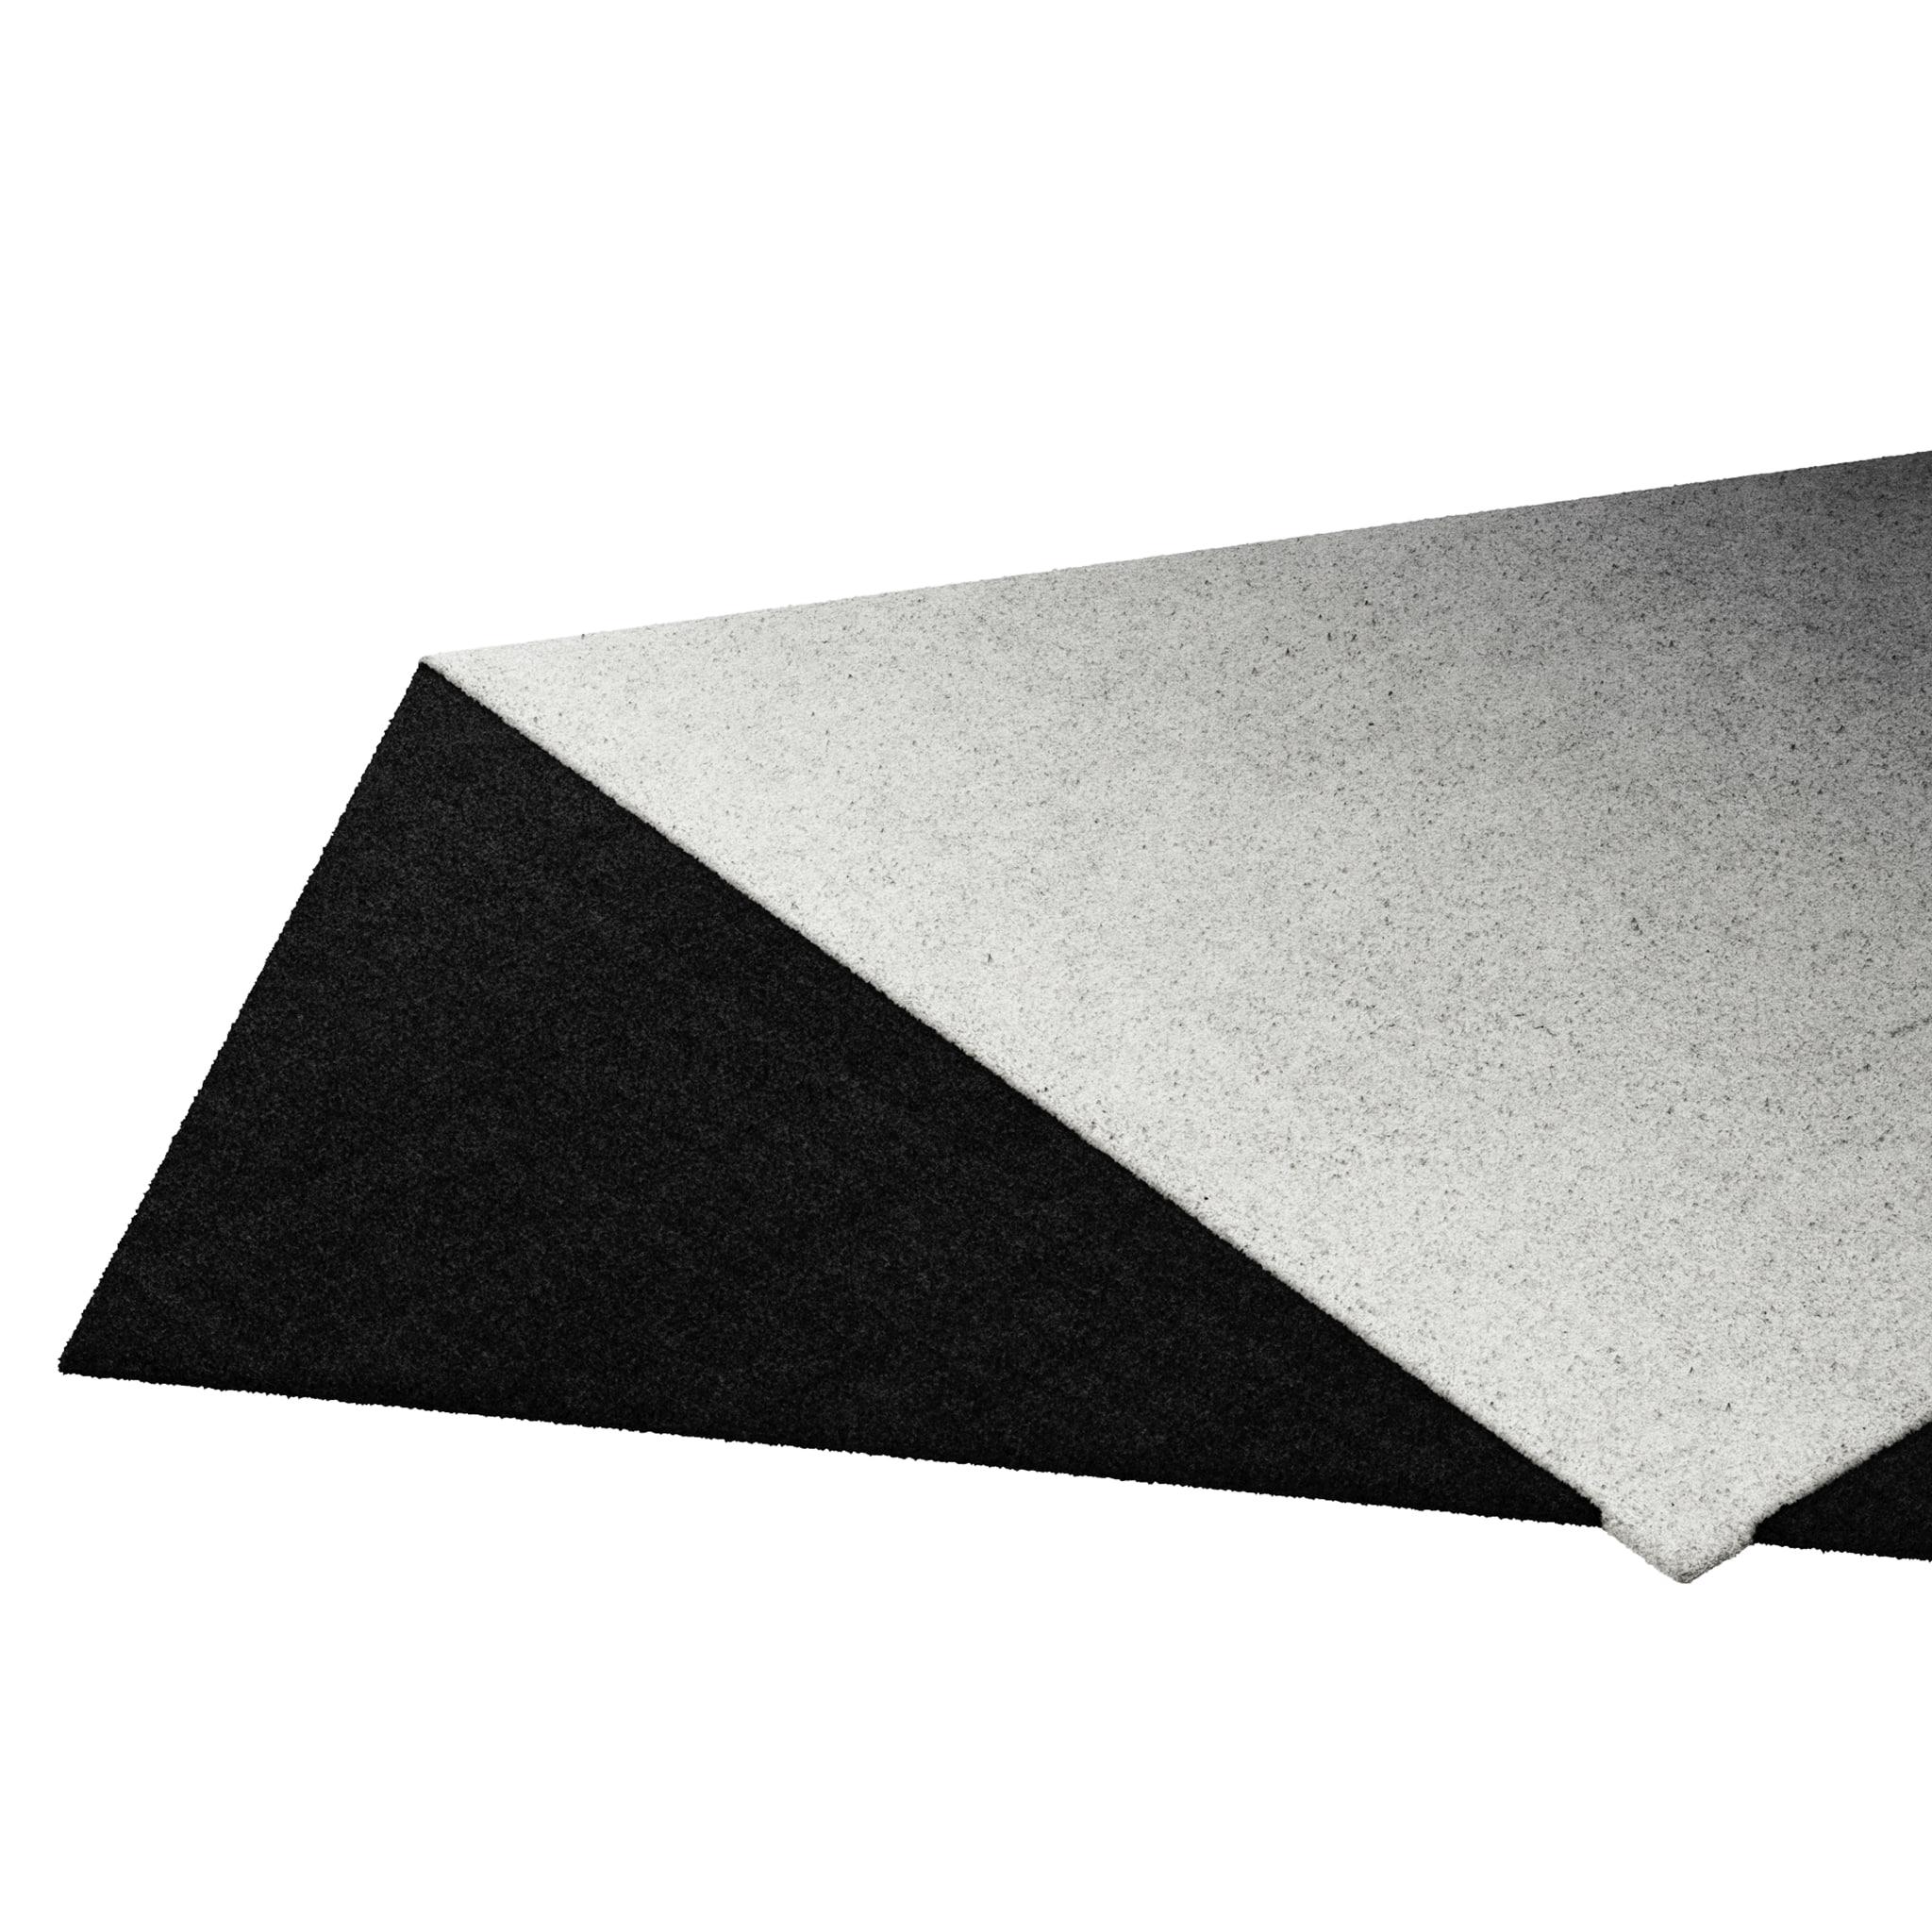 Tapis Retro #007 ist ein Retro-Teppich mit unregelmäßiger Form und monochromen Farbtönen. Inspiriert von architektonischen Linien, setzt dieser geometrische Teppich in jedem Wohnbereich ein Zeichen.

Mit einer 3D-Tufting-Technik, die Schnitt- und